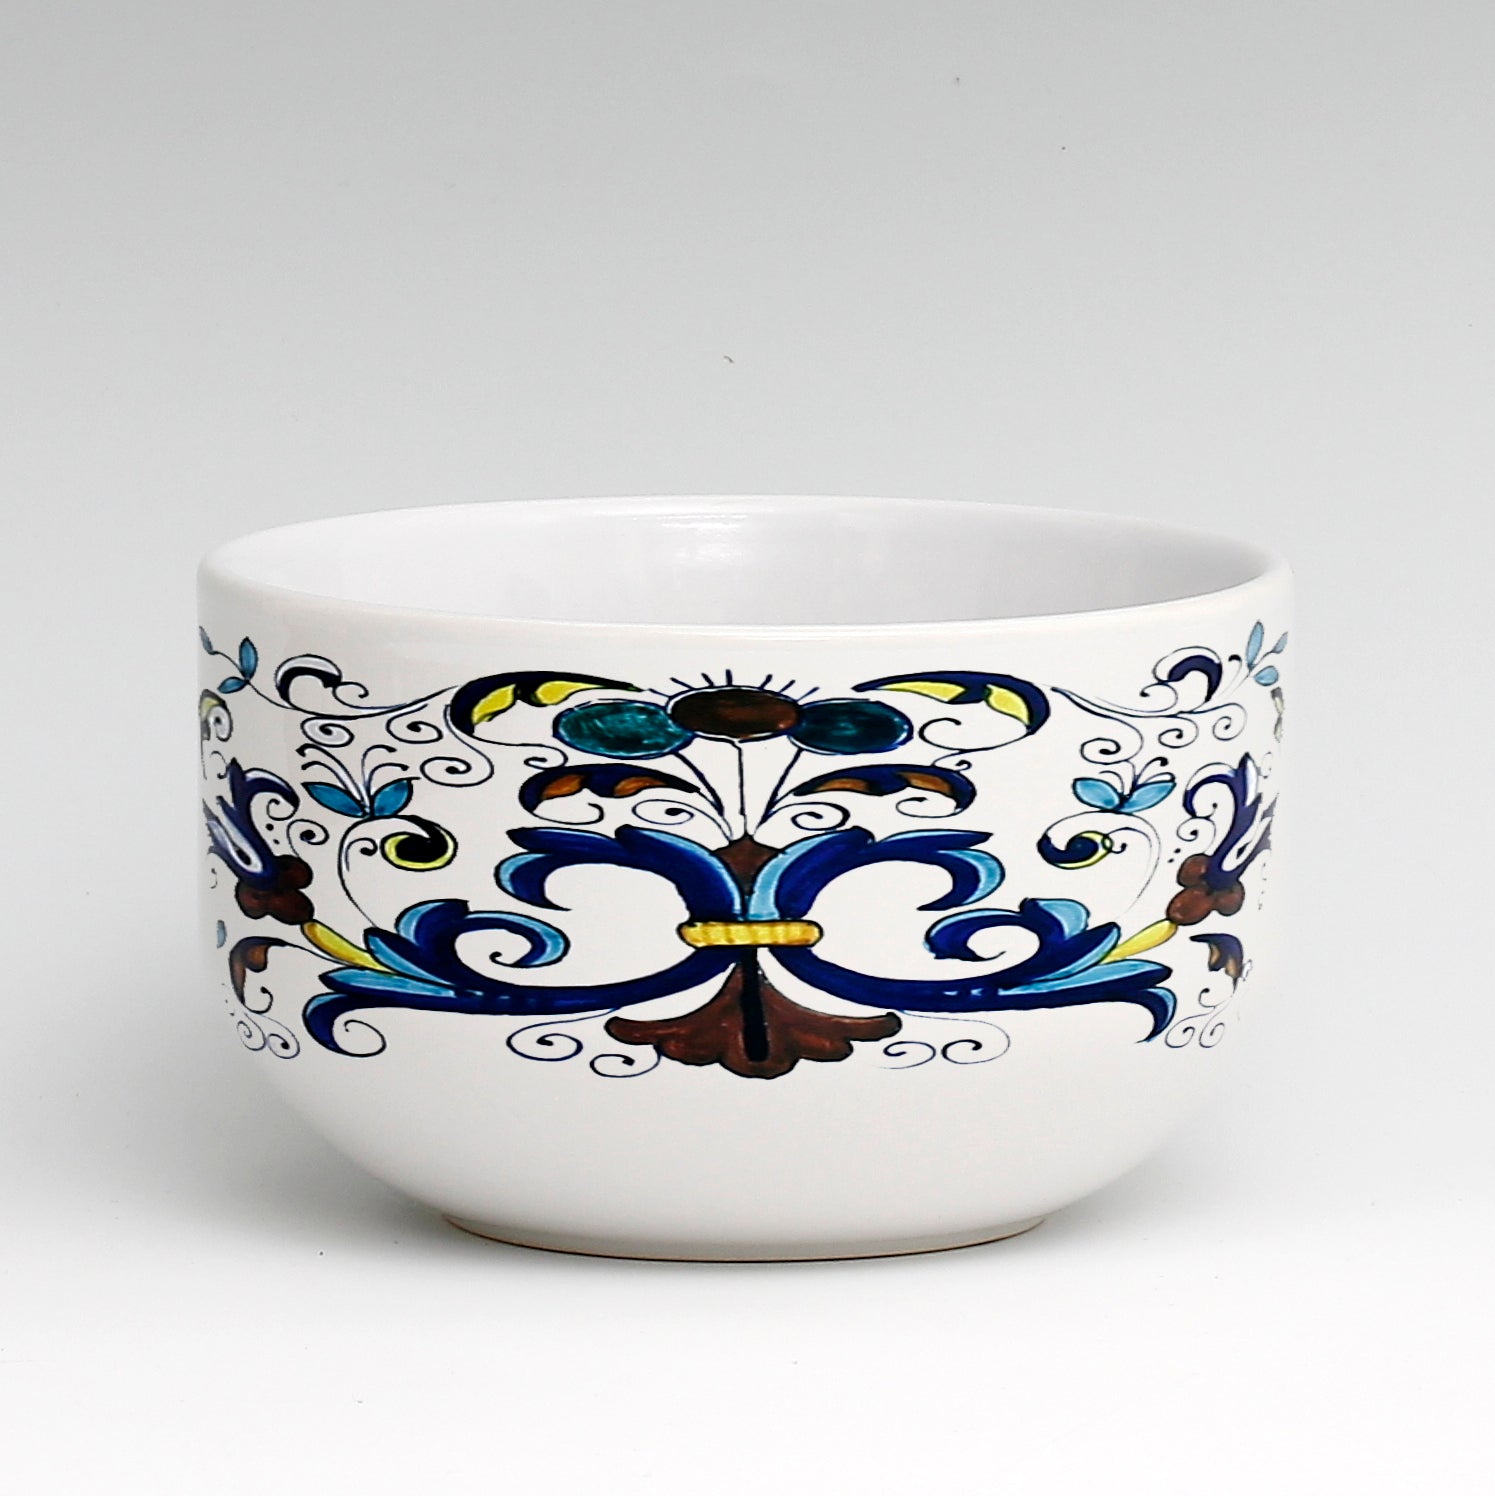 SUBLIMART: Porcelain Cereal/Soup Bowl Deruta Style (Design #DER04)